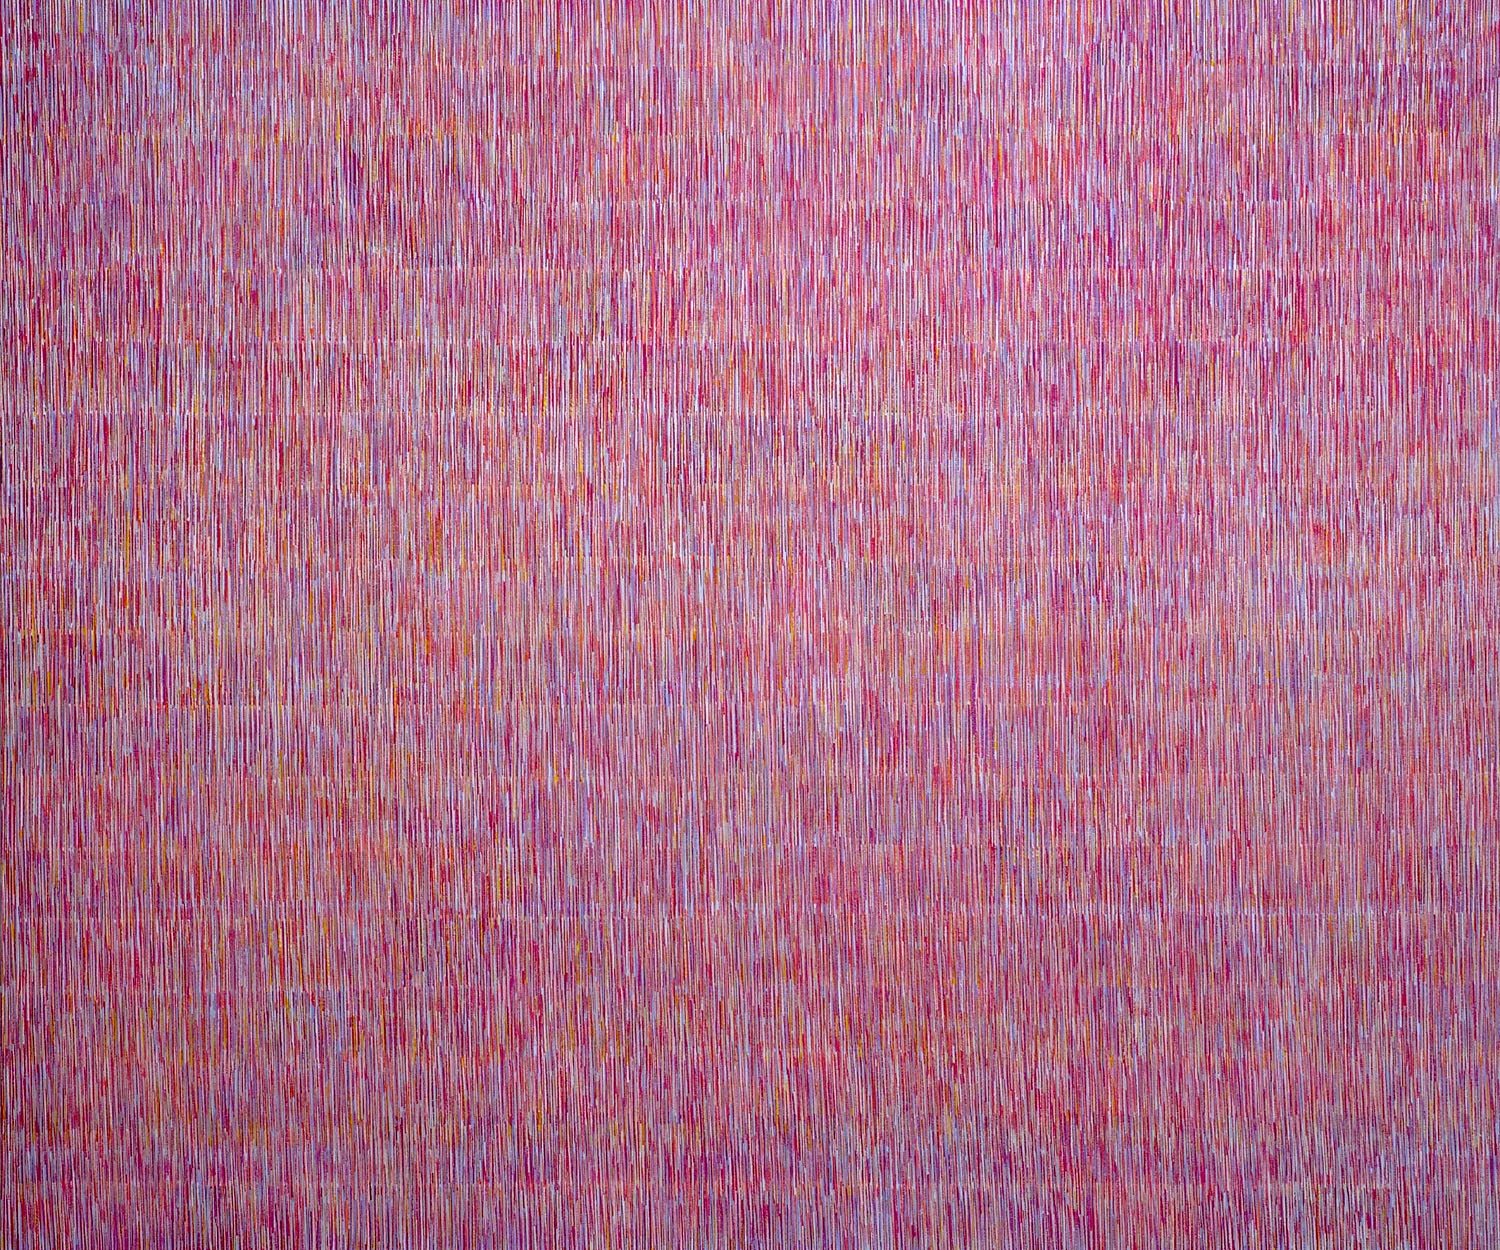 Nikola Dimitrov, Große Komposition I, 2010, 250 x 300 cm, Pigmente, Bindemittel, Lösungsmittel auf Leinwand